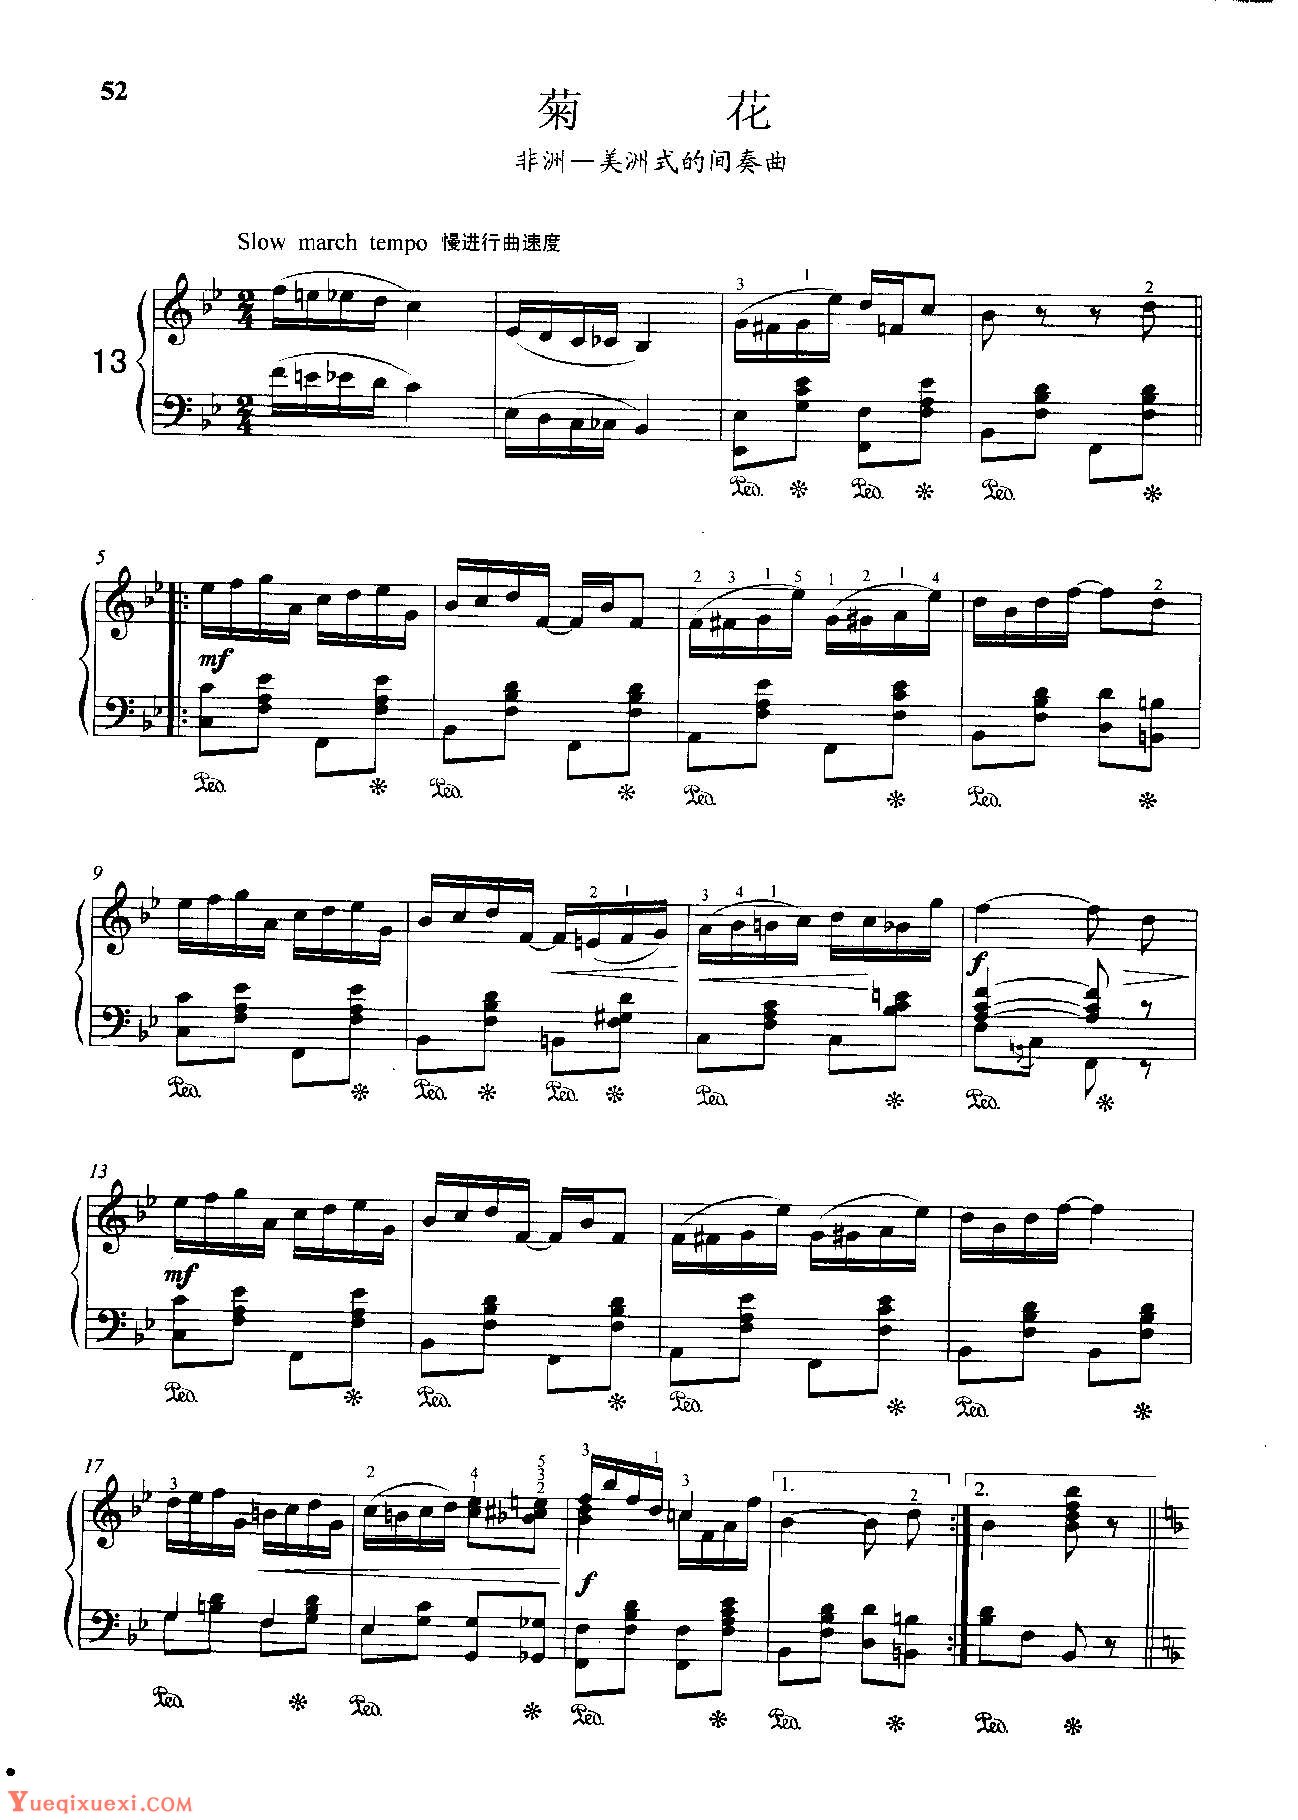 雷格泰姆钢琴乐谱《菊花》雷格泰姆之王斯科特·乔普林